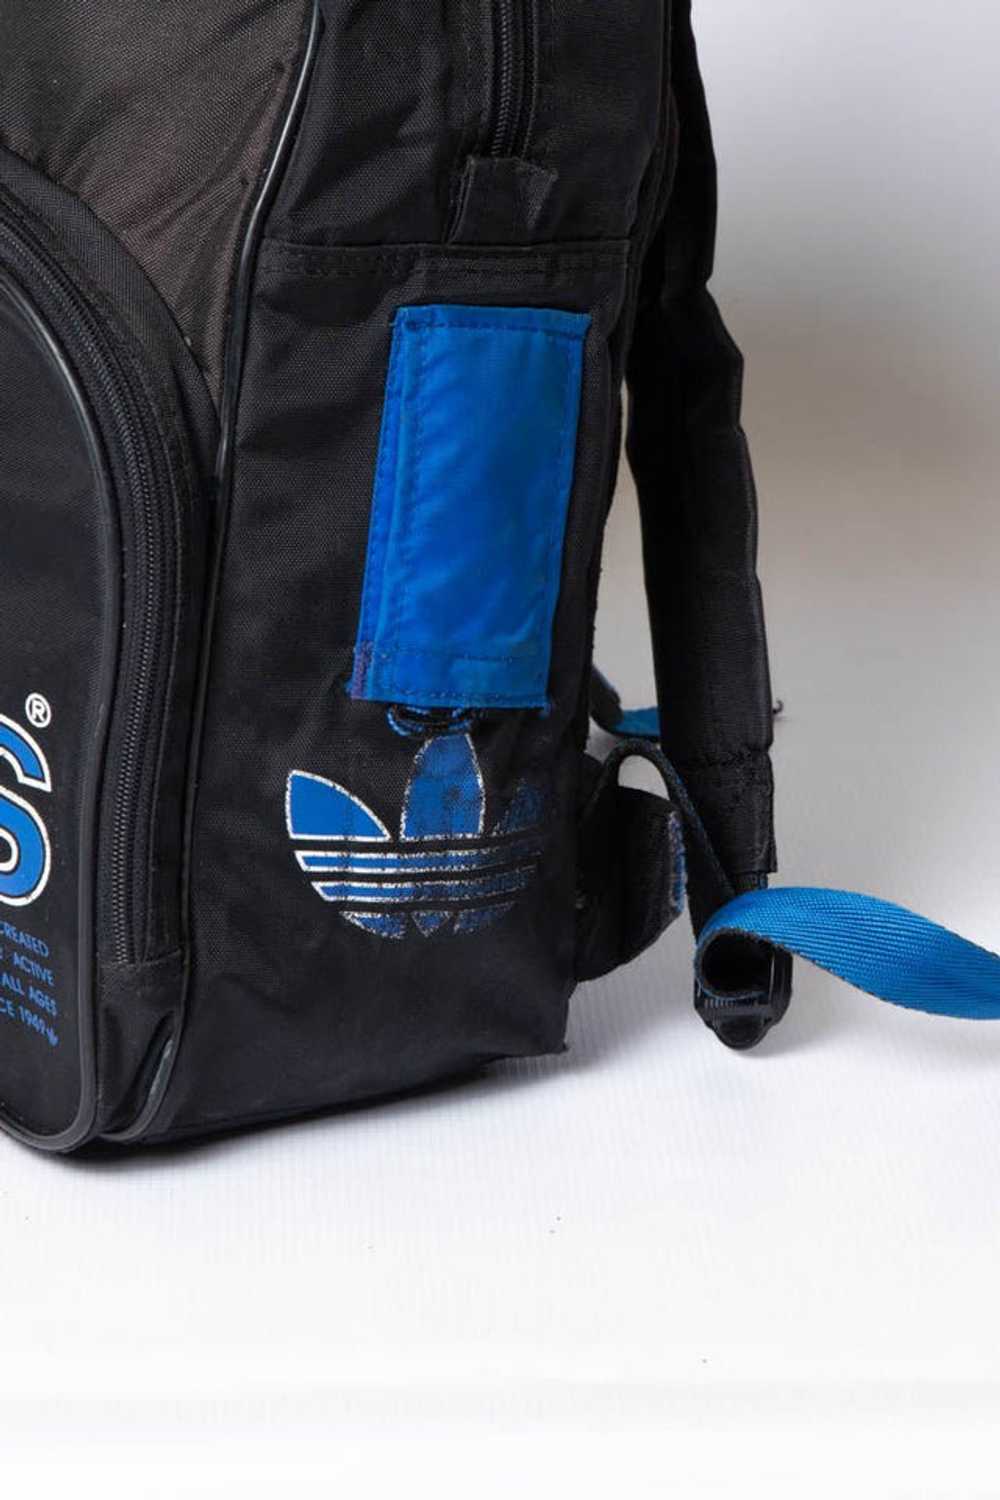 Adidas Backpack - image 3